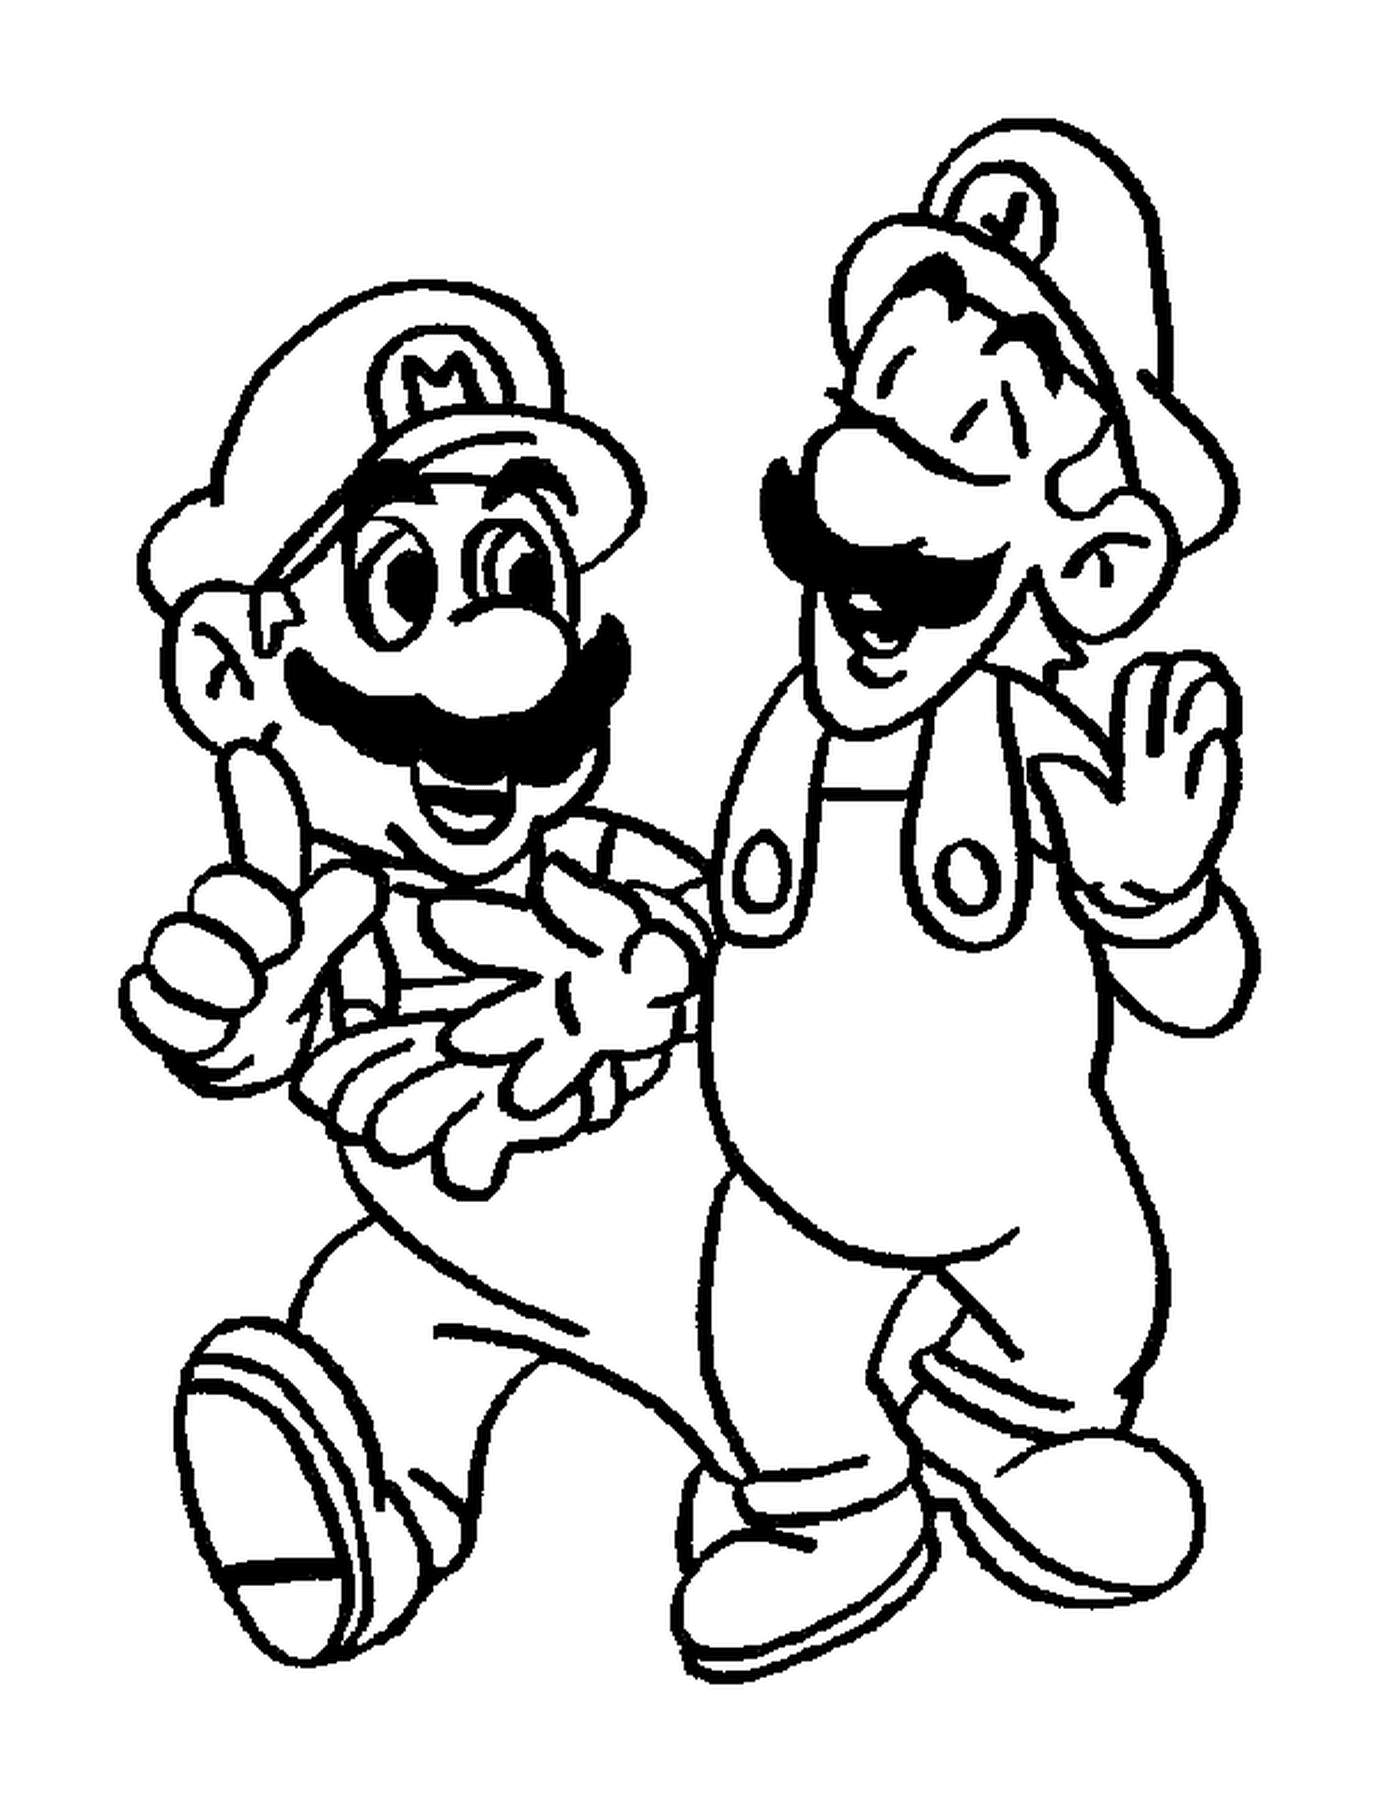  Luigi e Mario, due fratelli inseparabili 